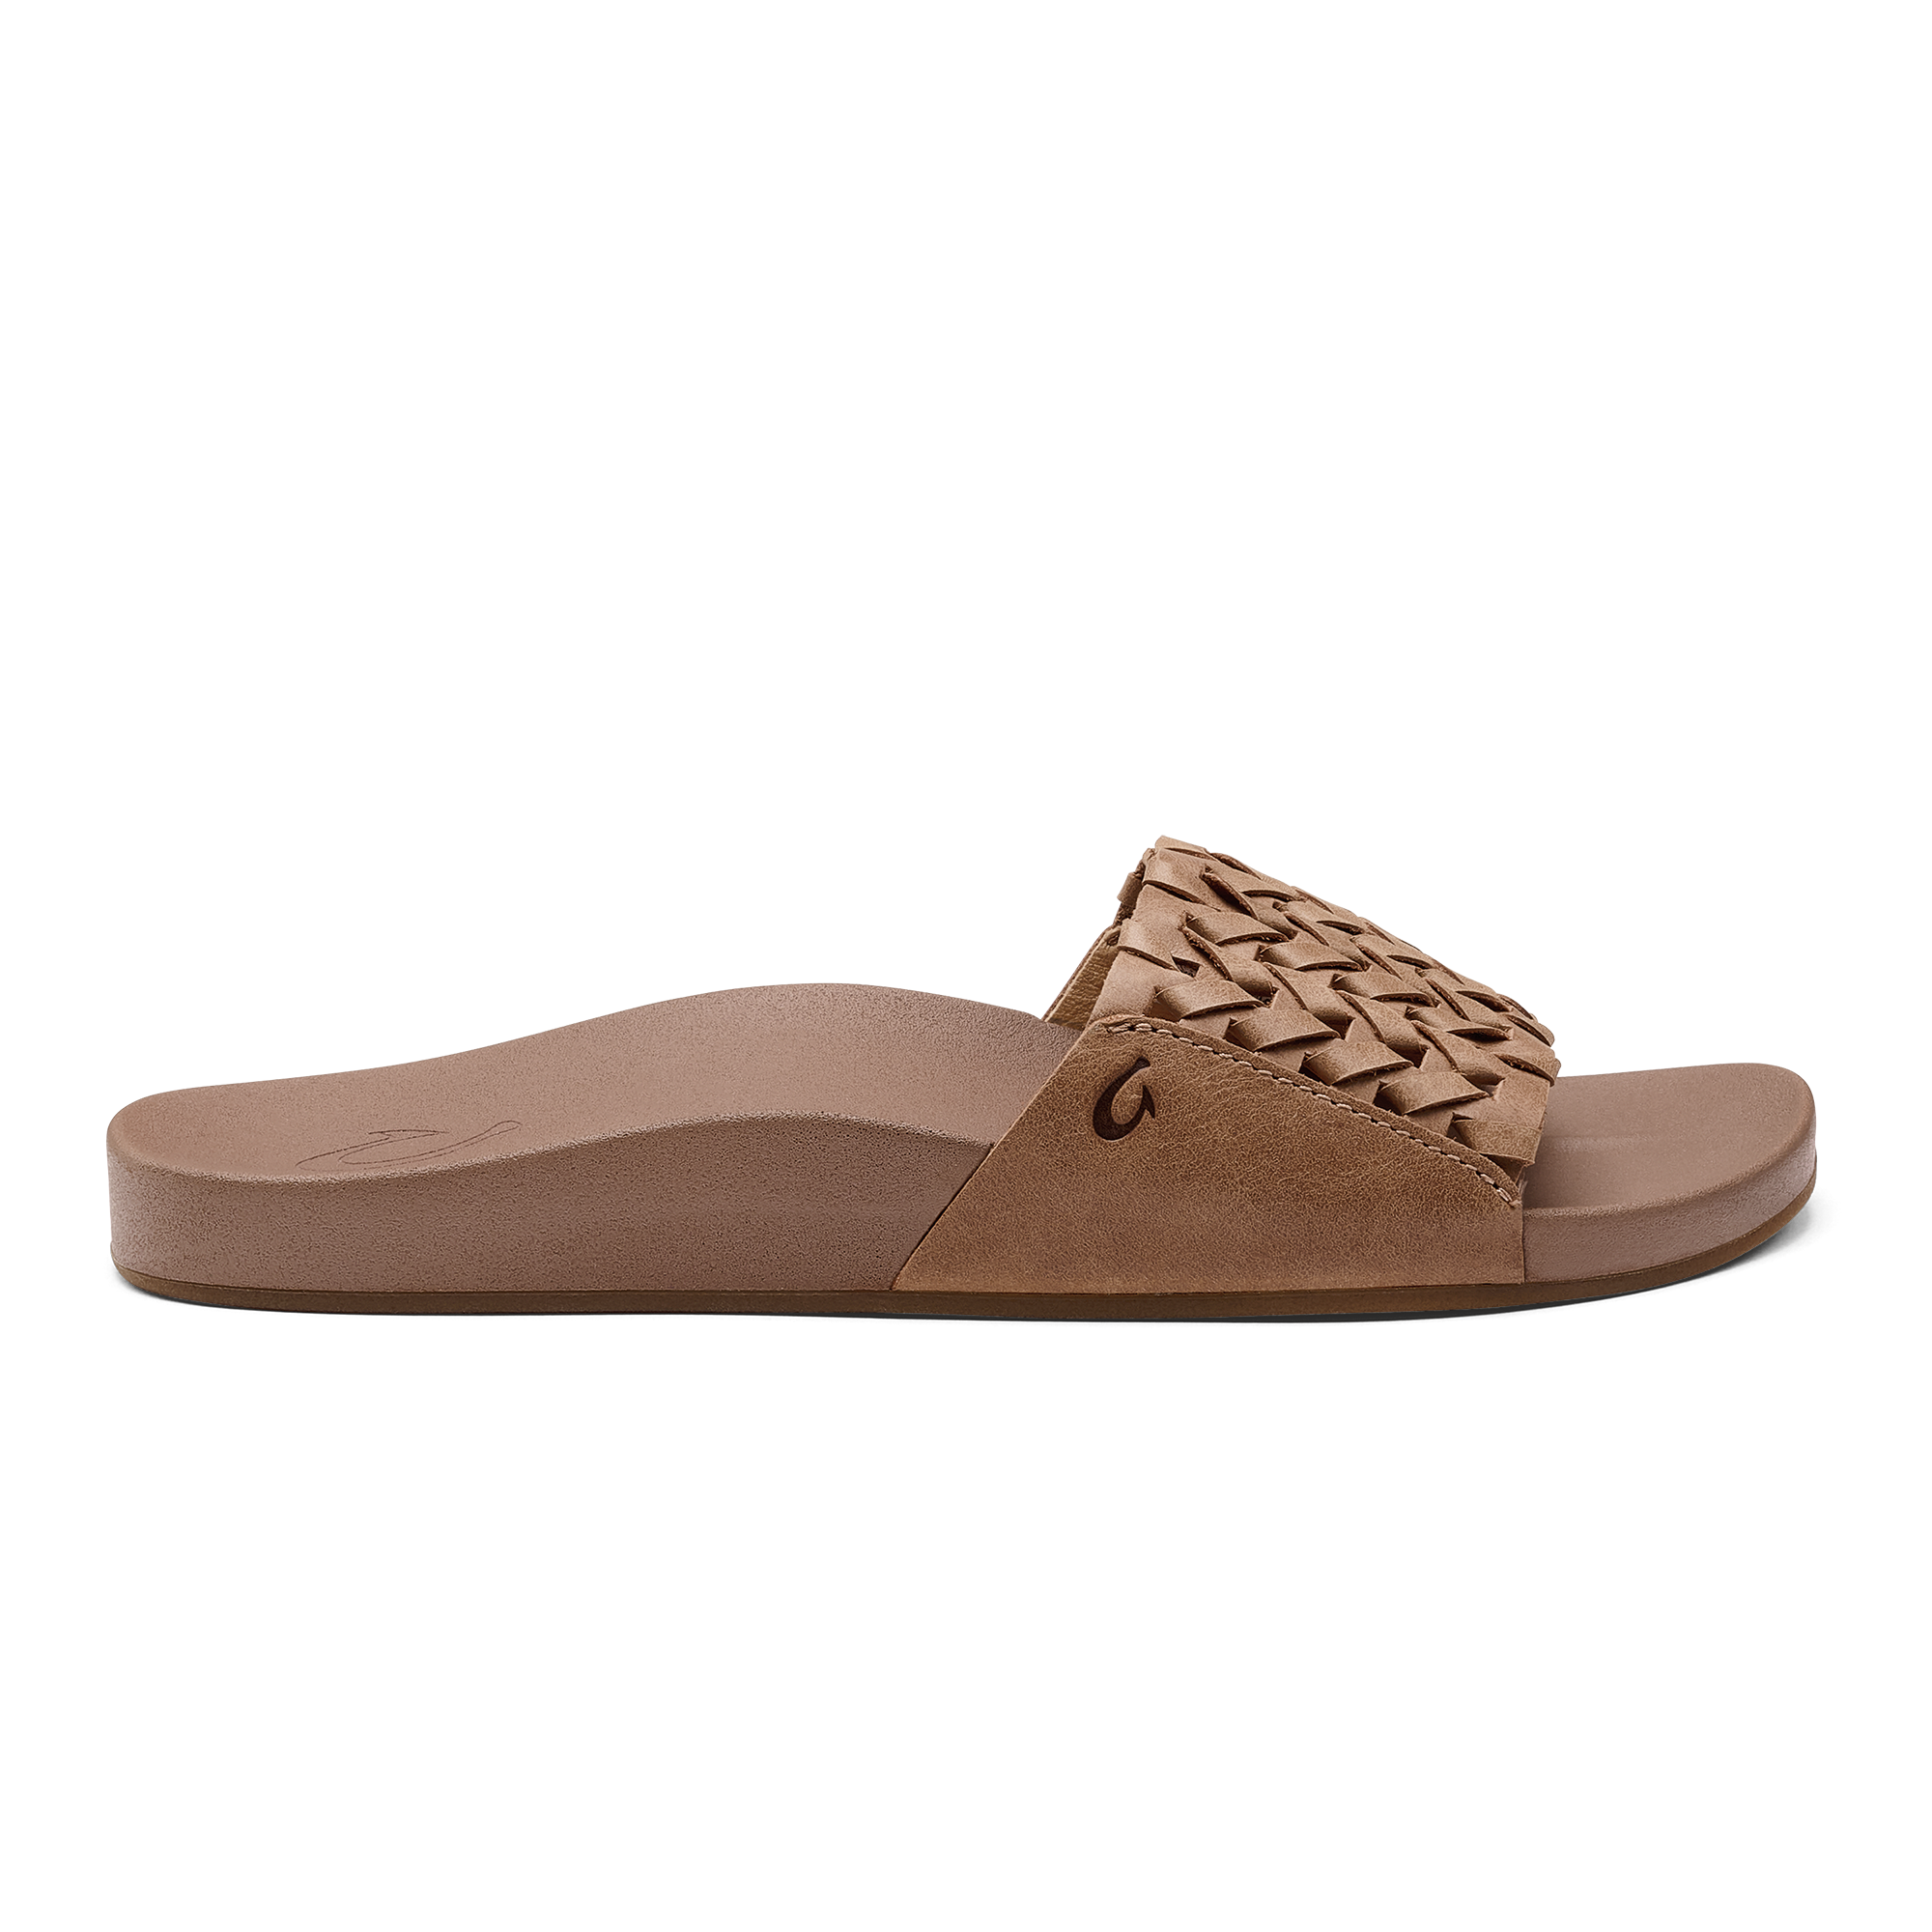 OluKai Paniolo - Tapa / Sahara, Women's Leather Beach Sandals